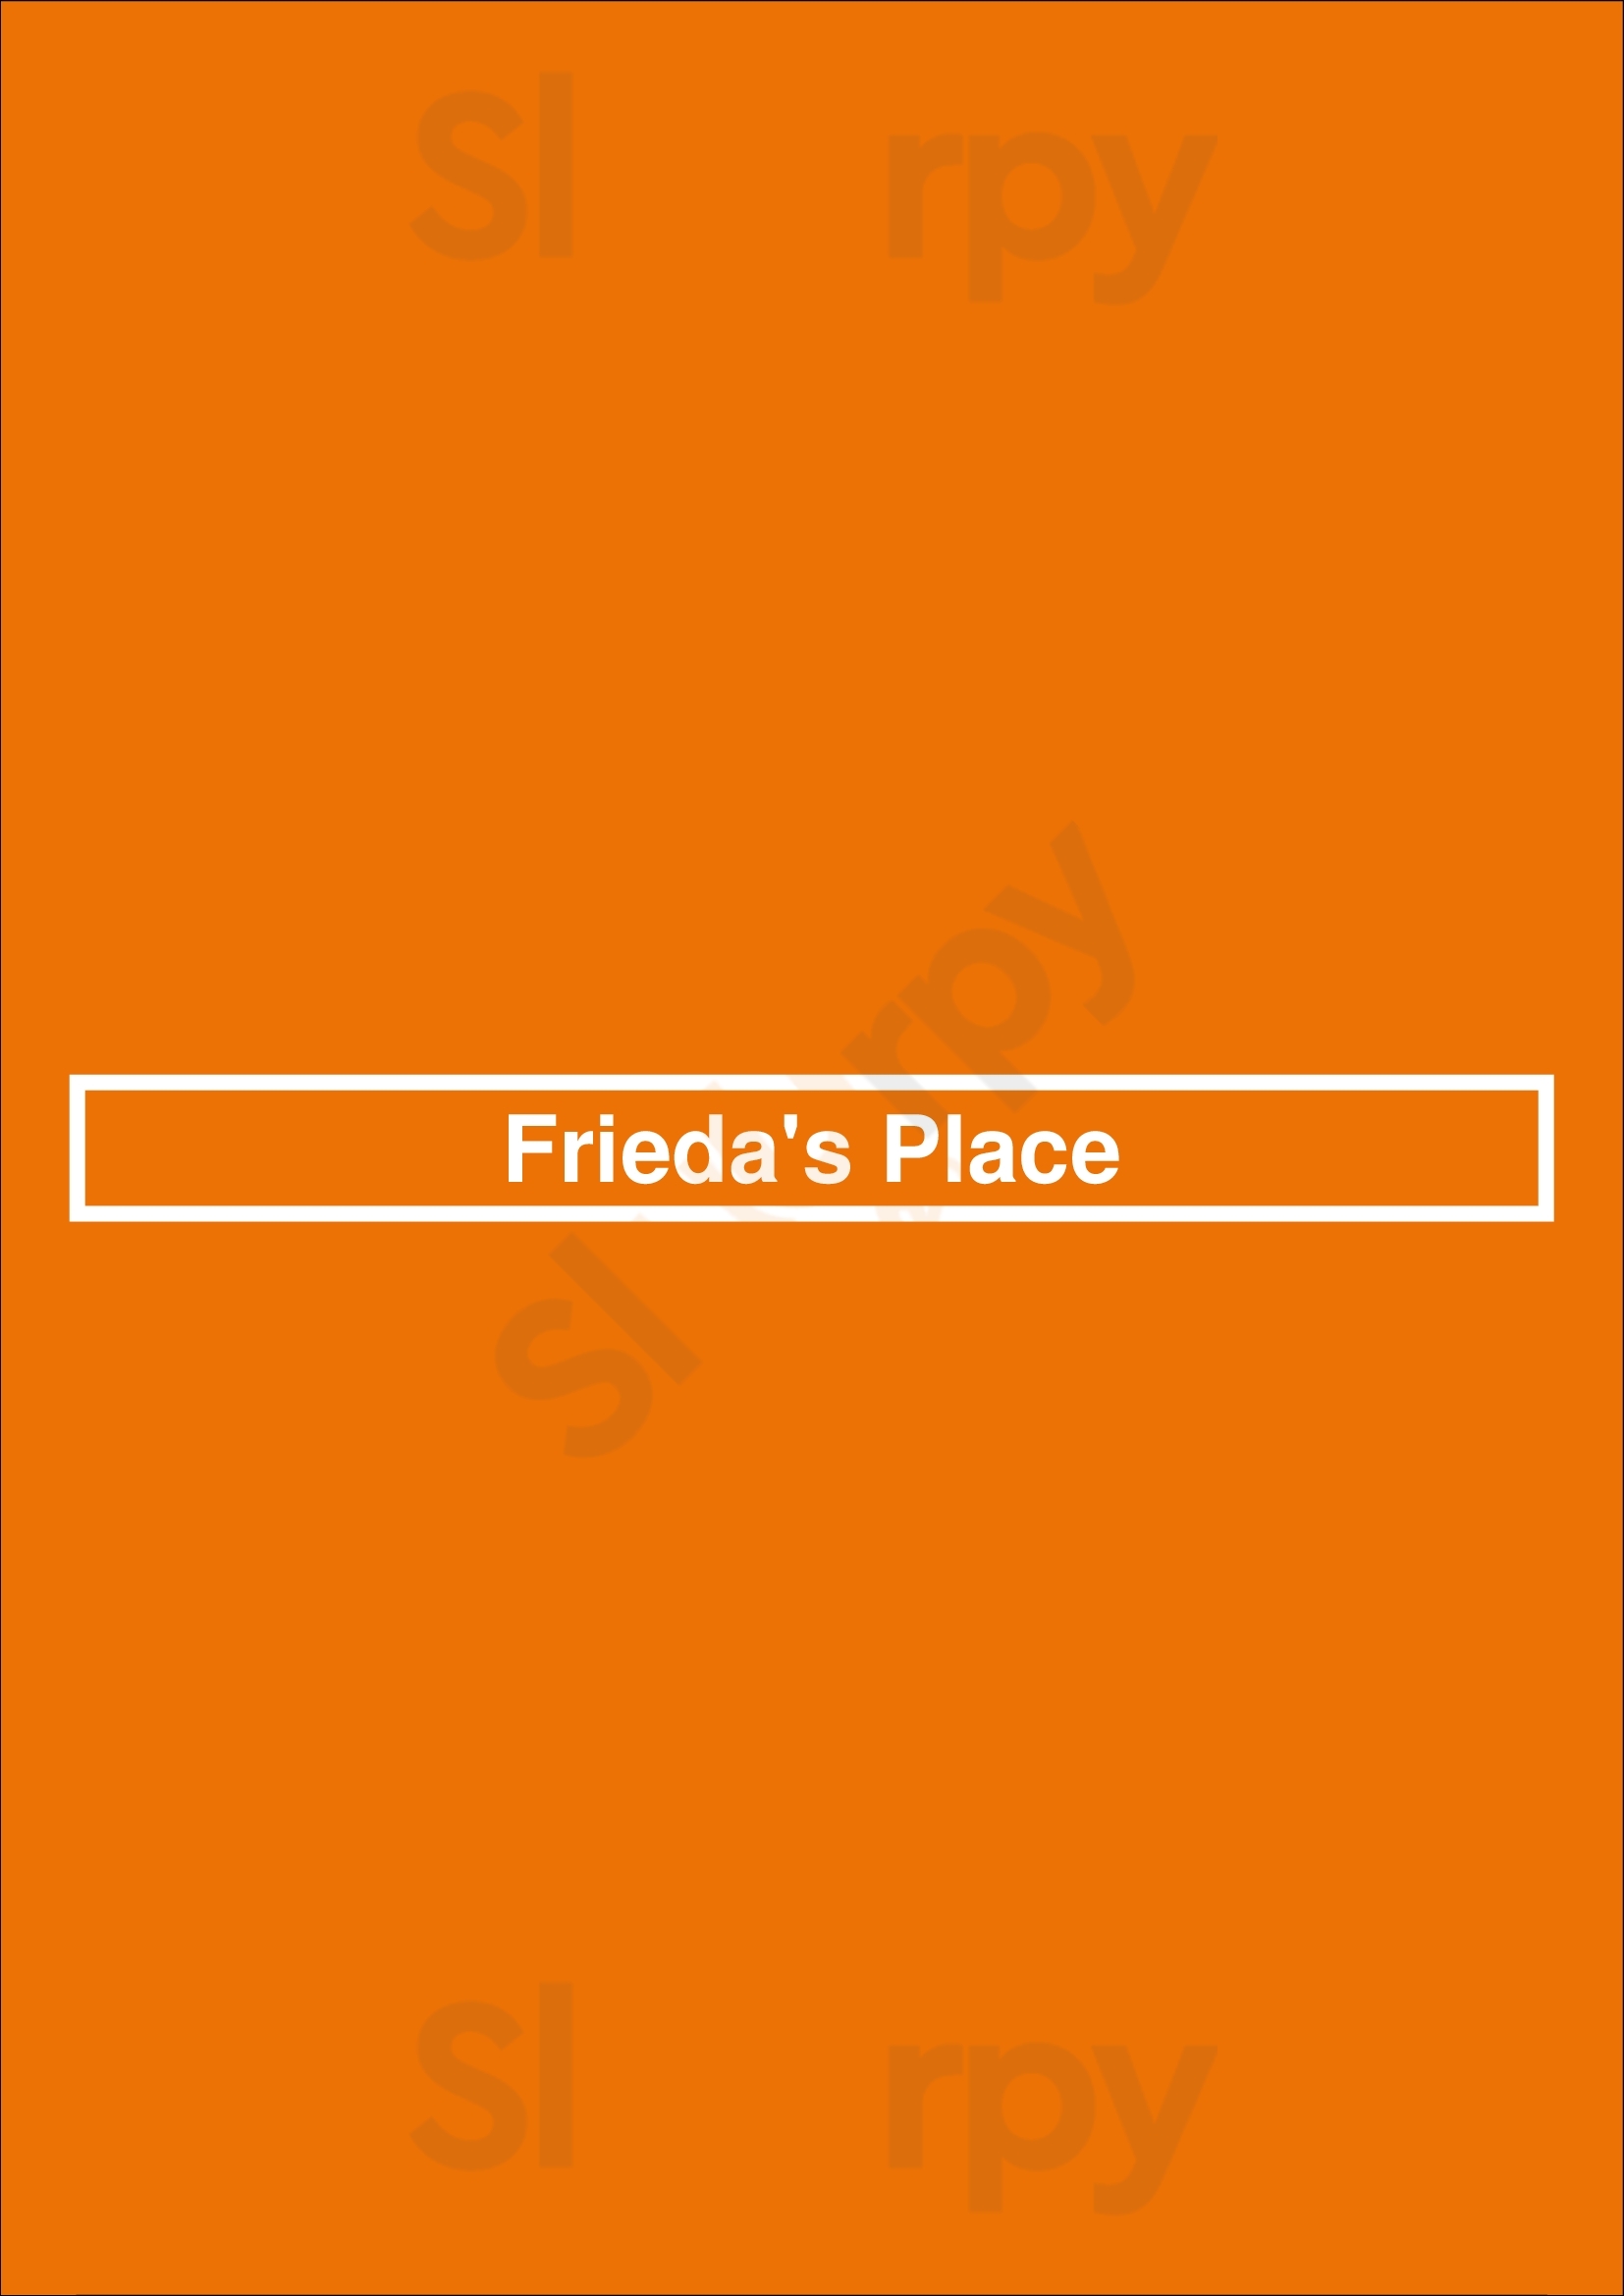 Frieda's Place Cambridge Menu - 1